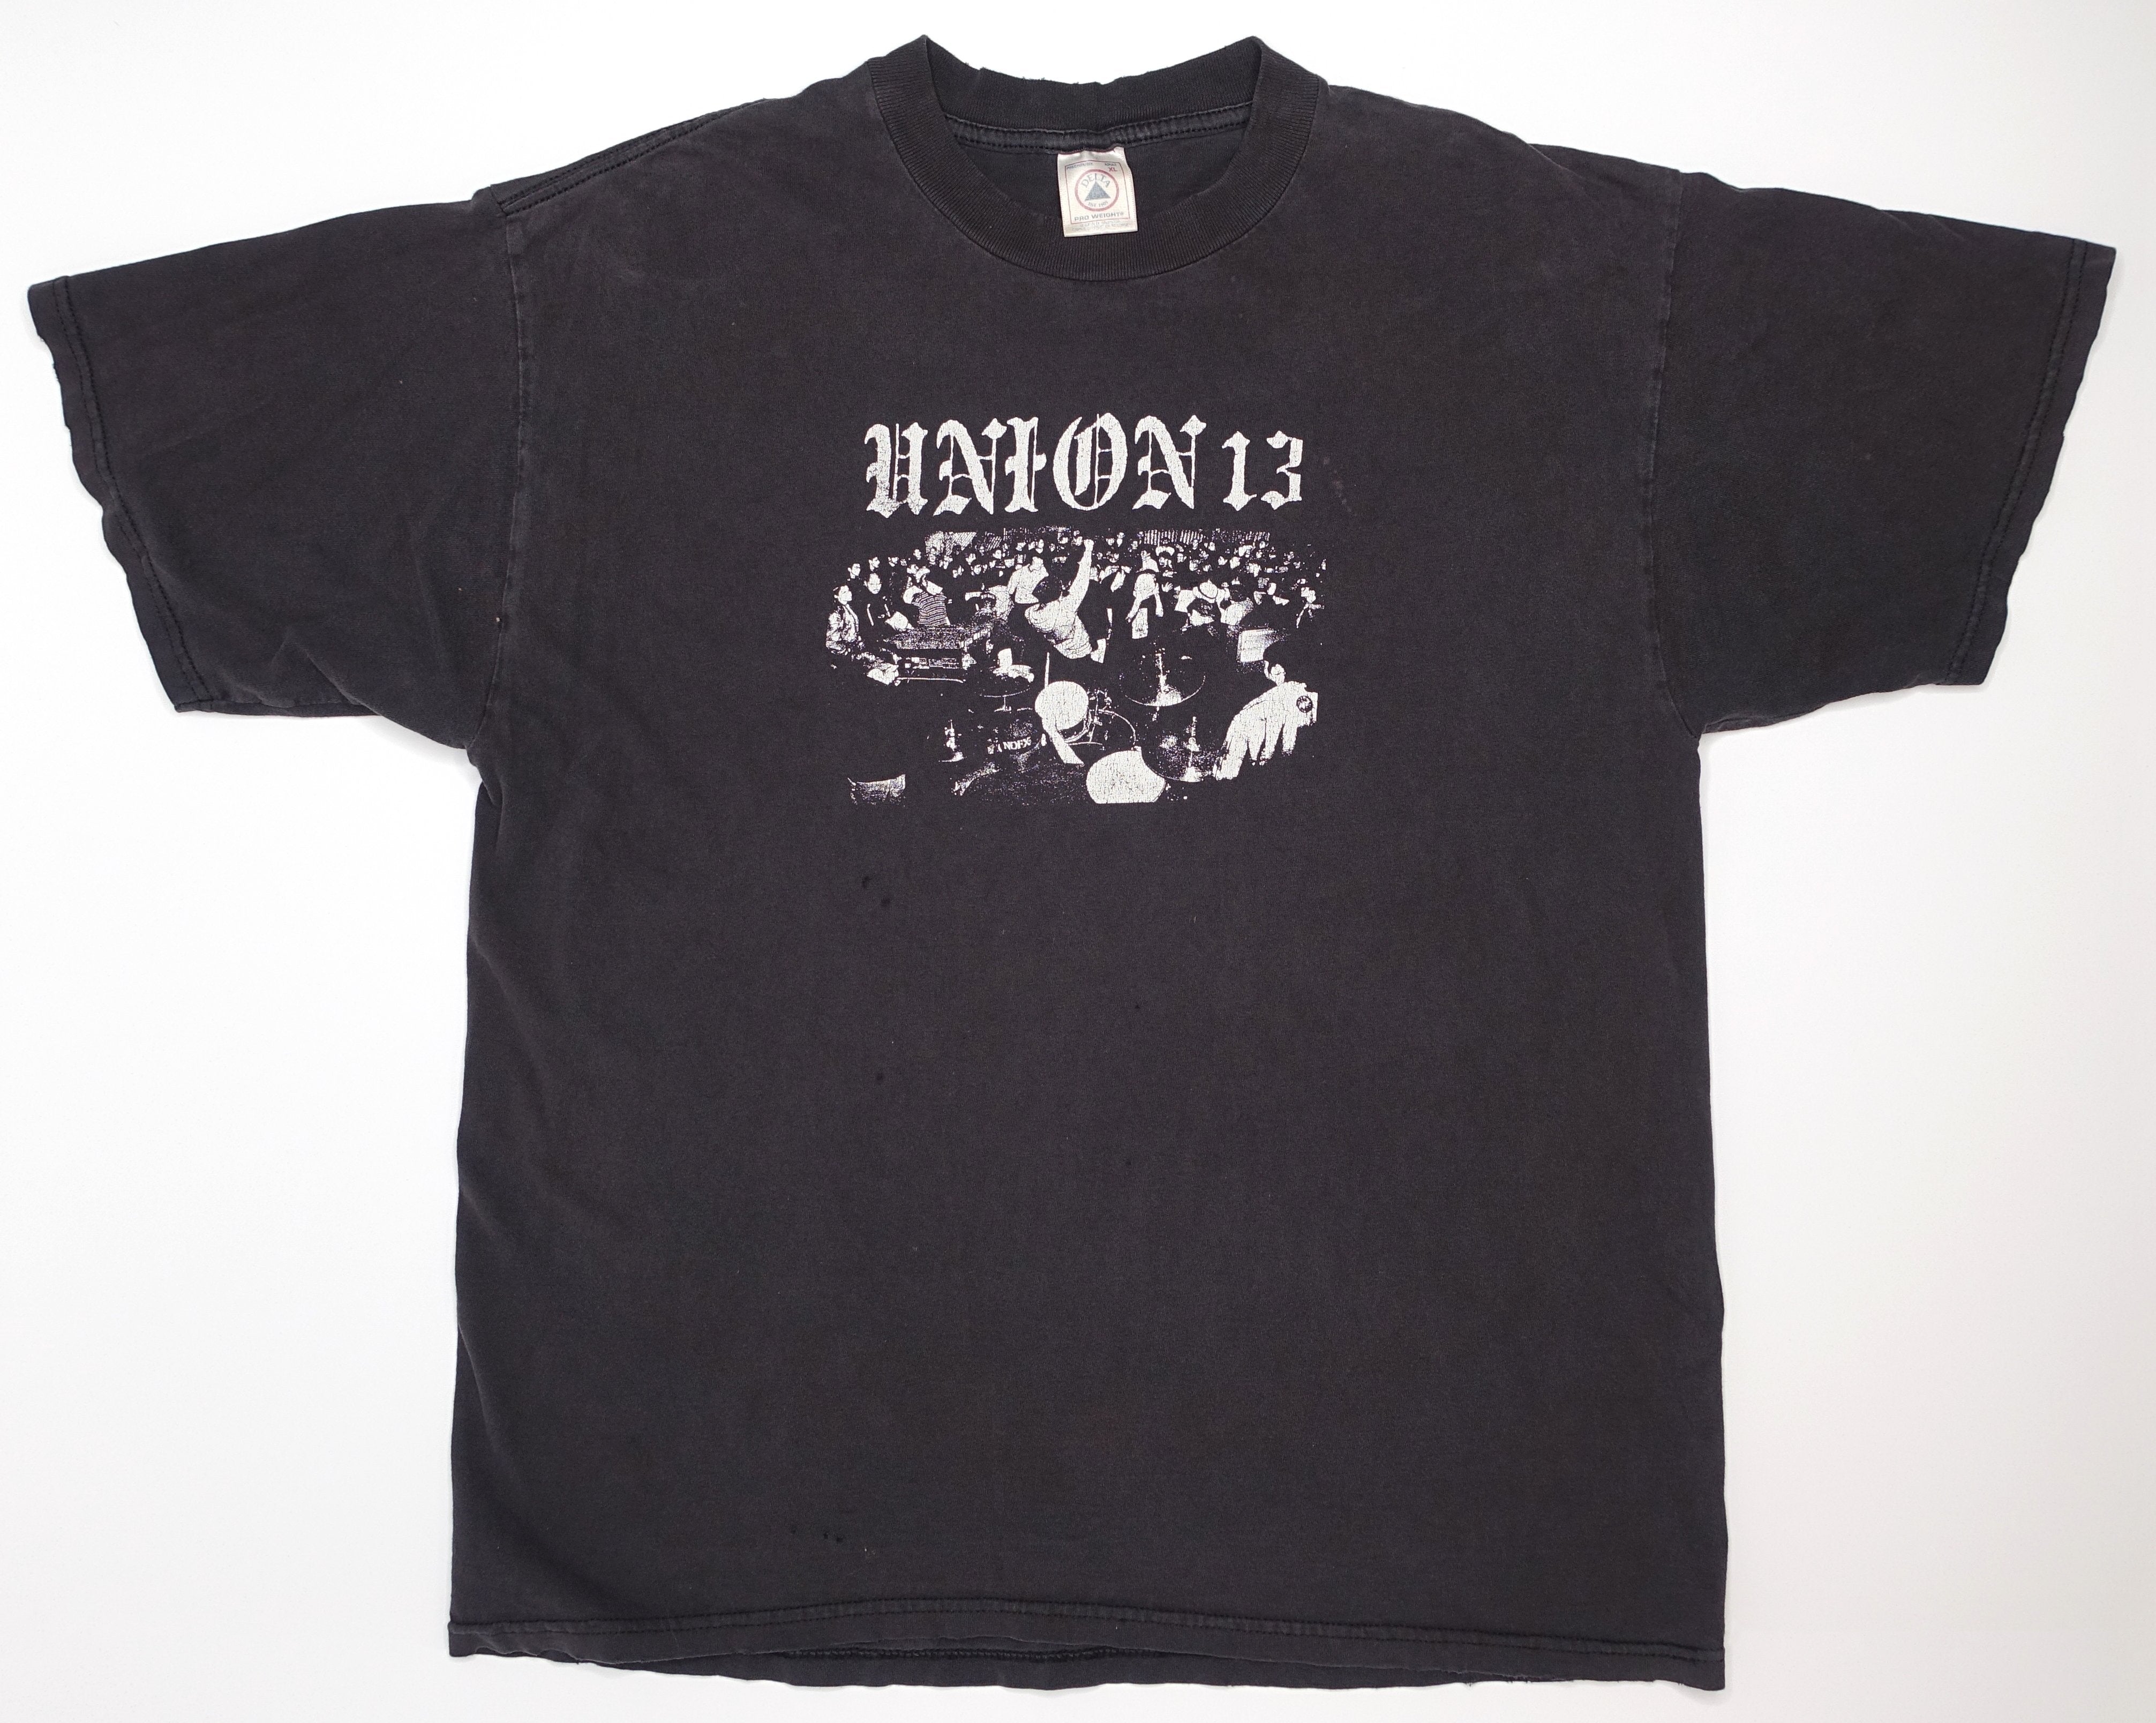 Union 13 - East Los Presents... 1997 Tour Shirt Size XL